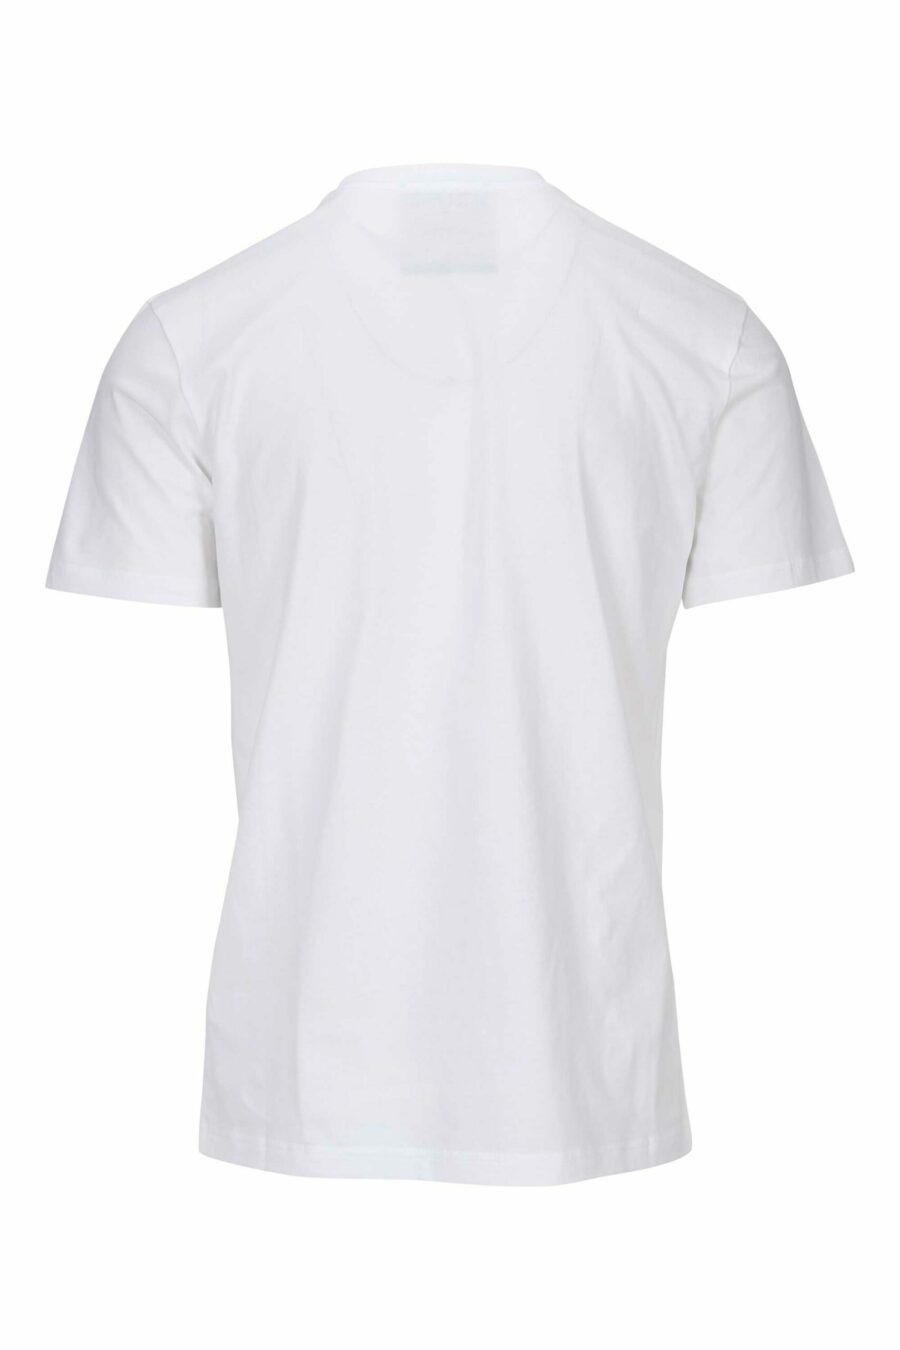 Weißes Bio-Baumwoll-T-Shirt mit klassischem schwarzem Maxilogo - 667113391403 1 skaliert